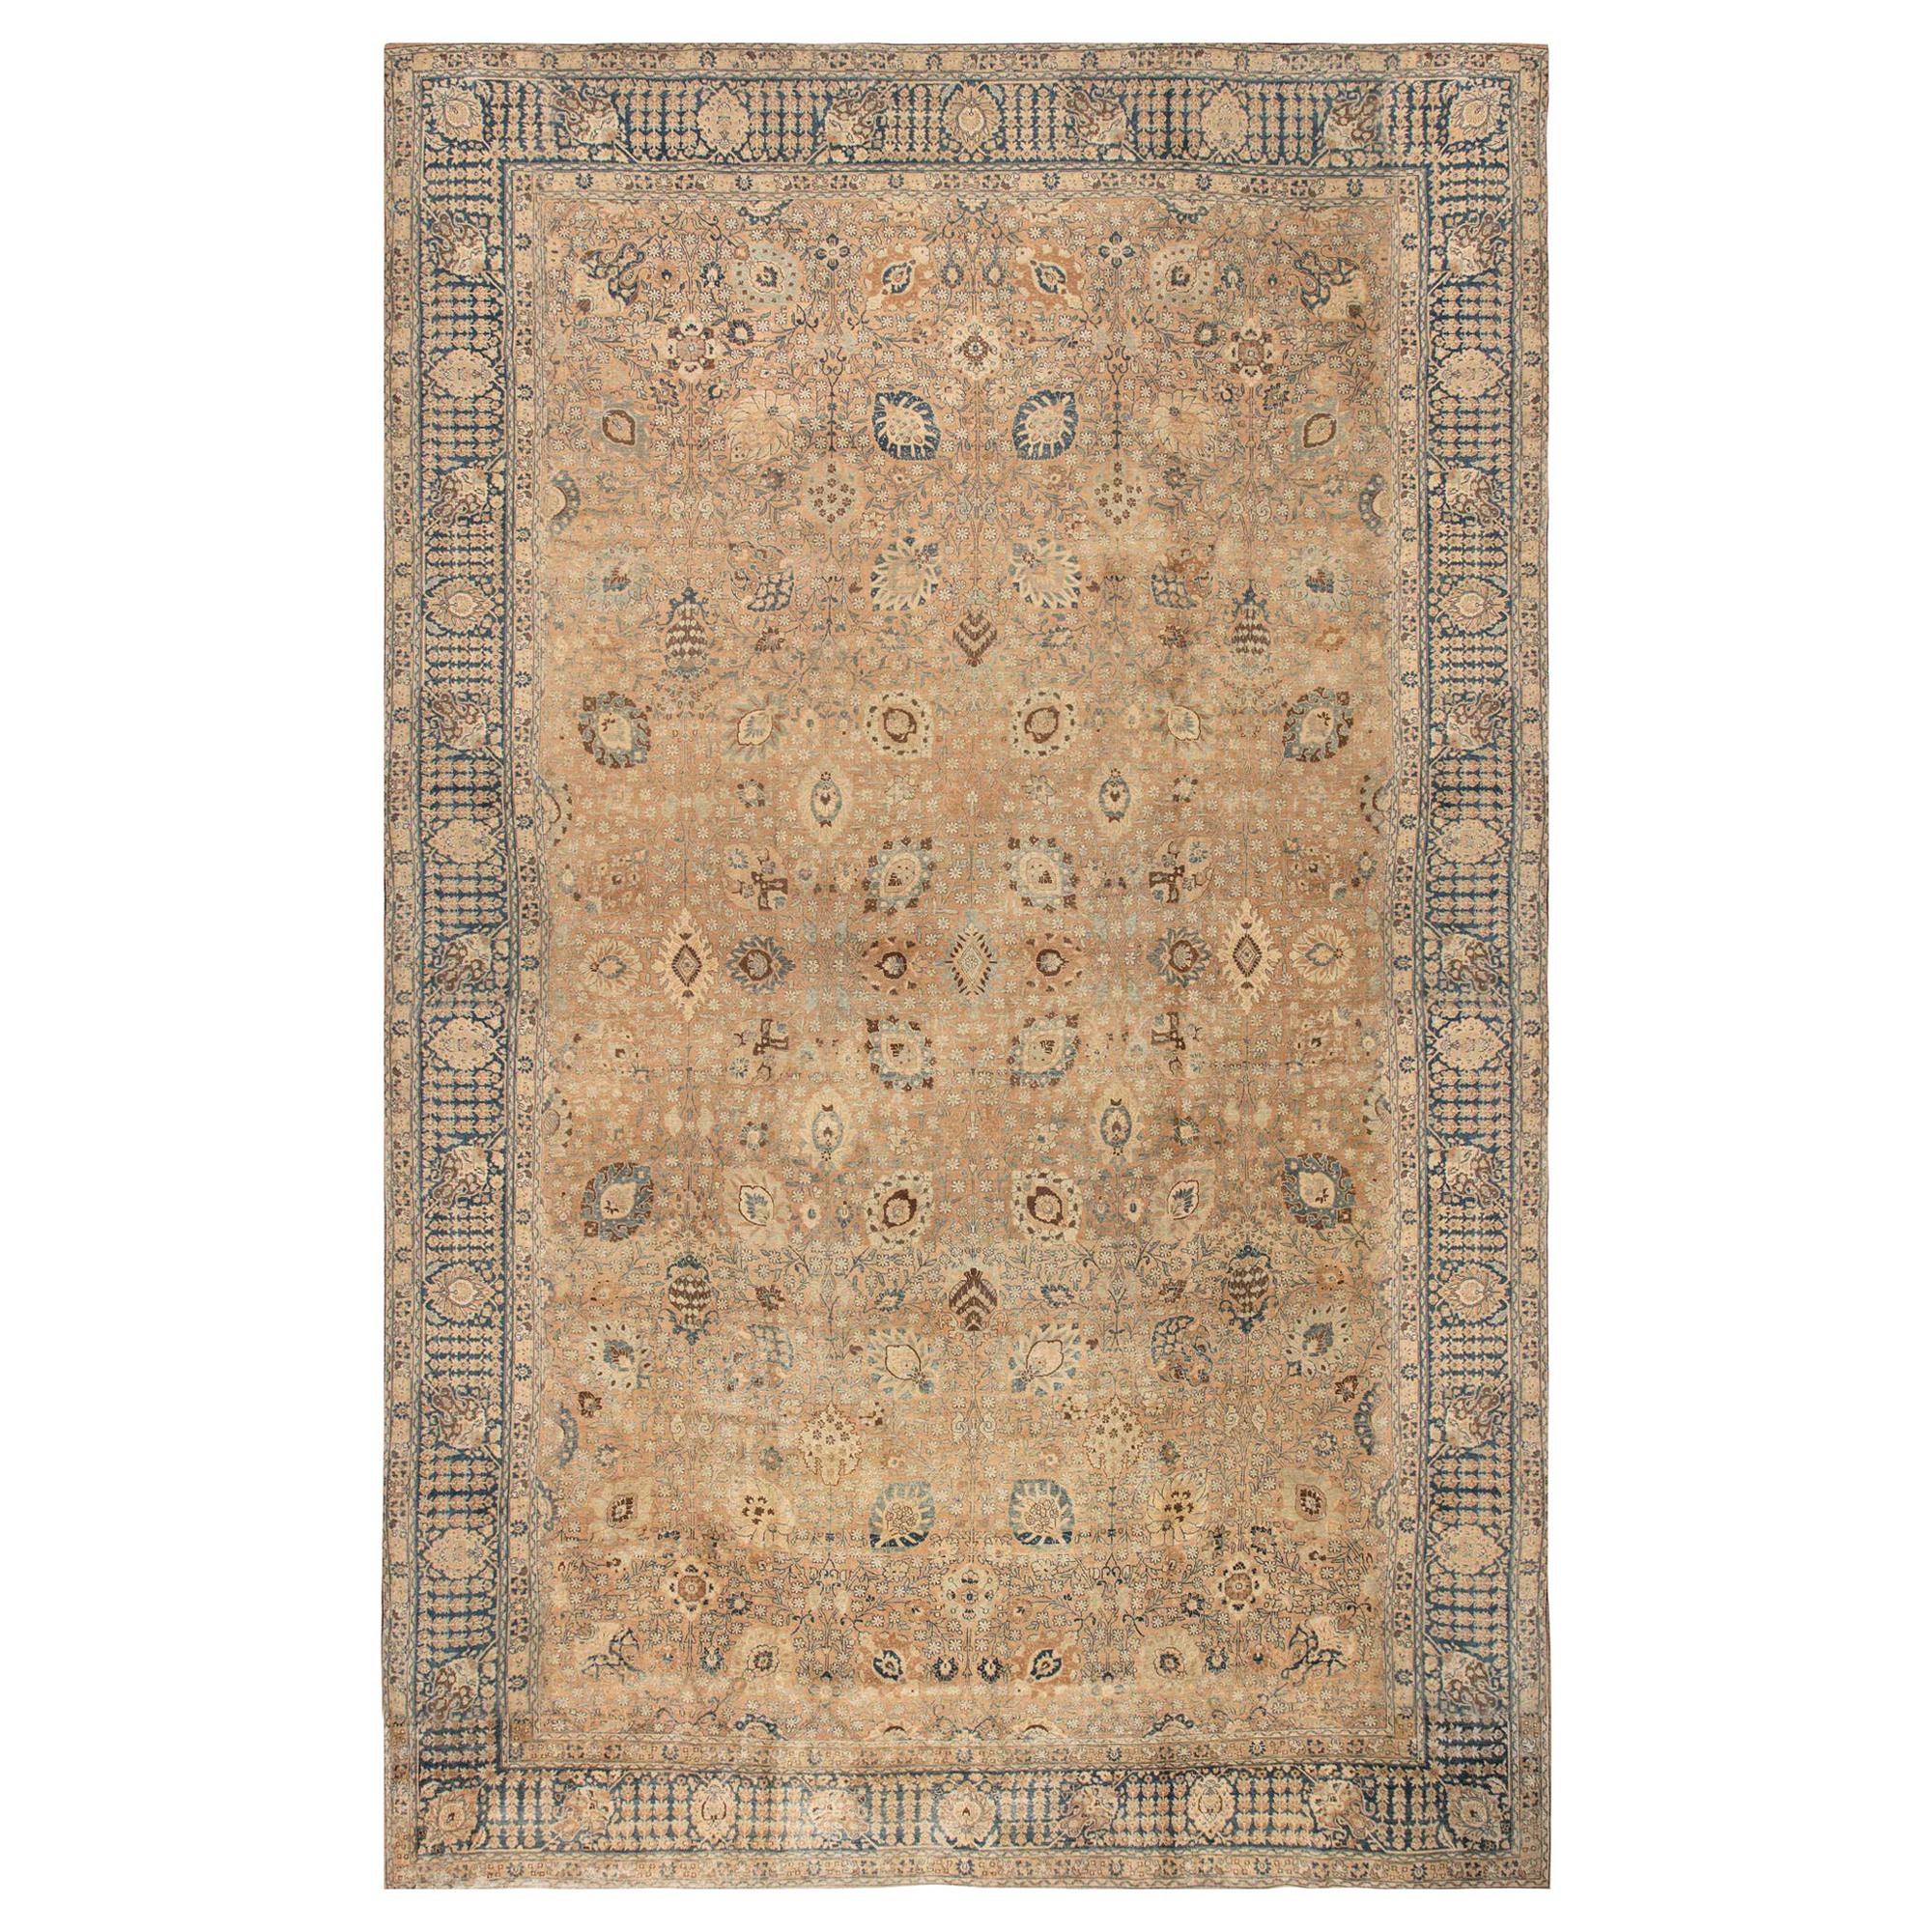 Authentique tapis persan de Tabriz du 19ème siècle fait à la main